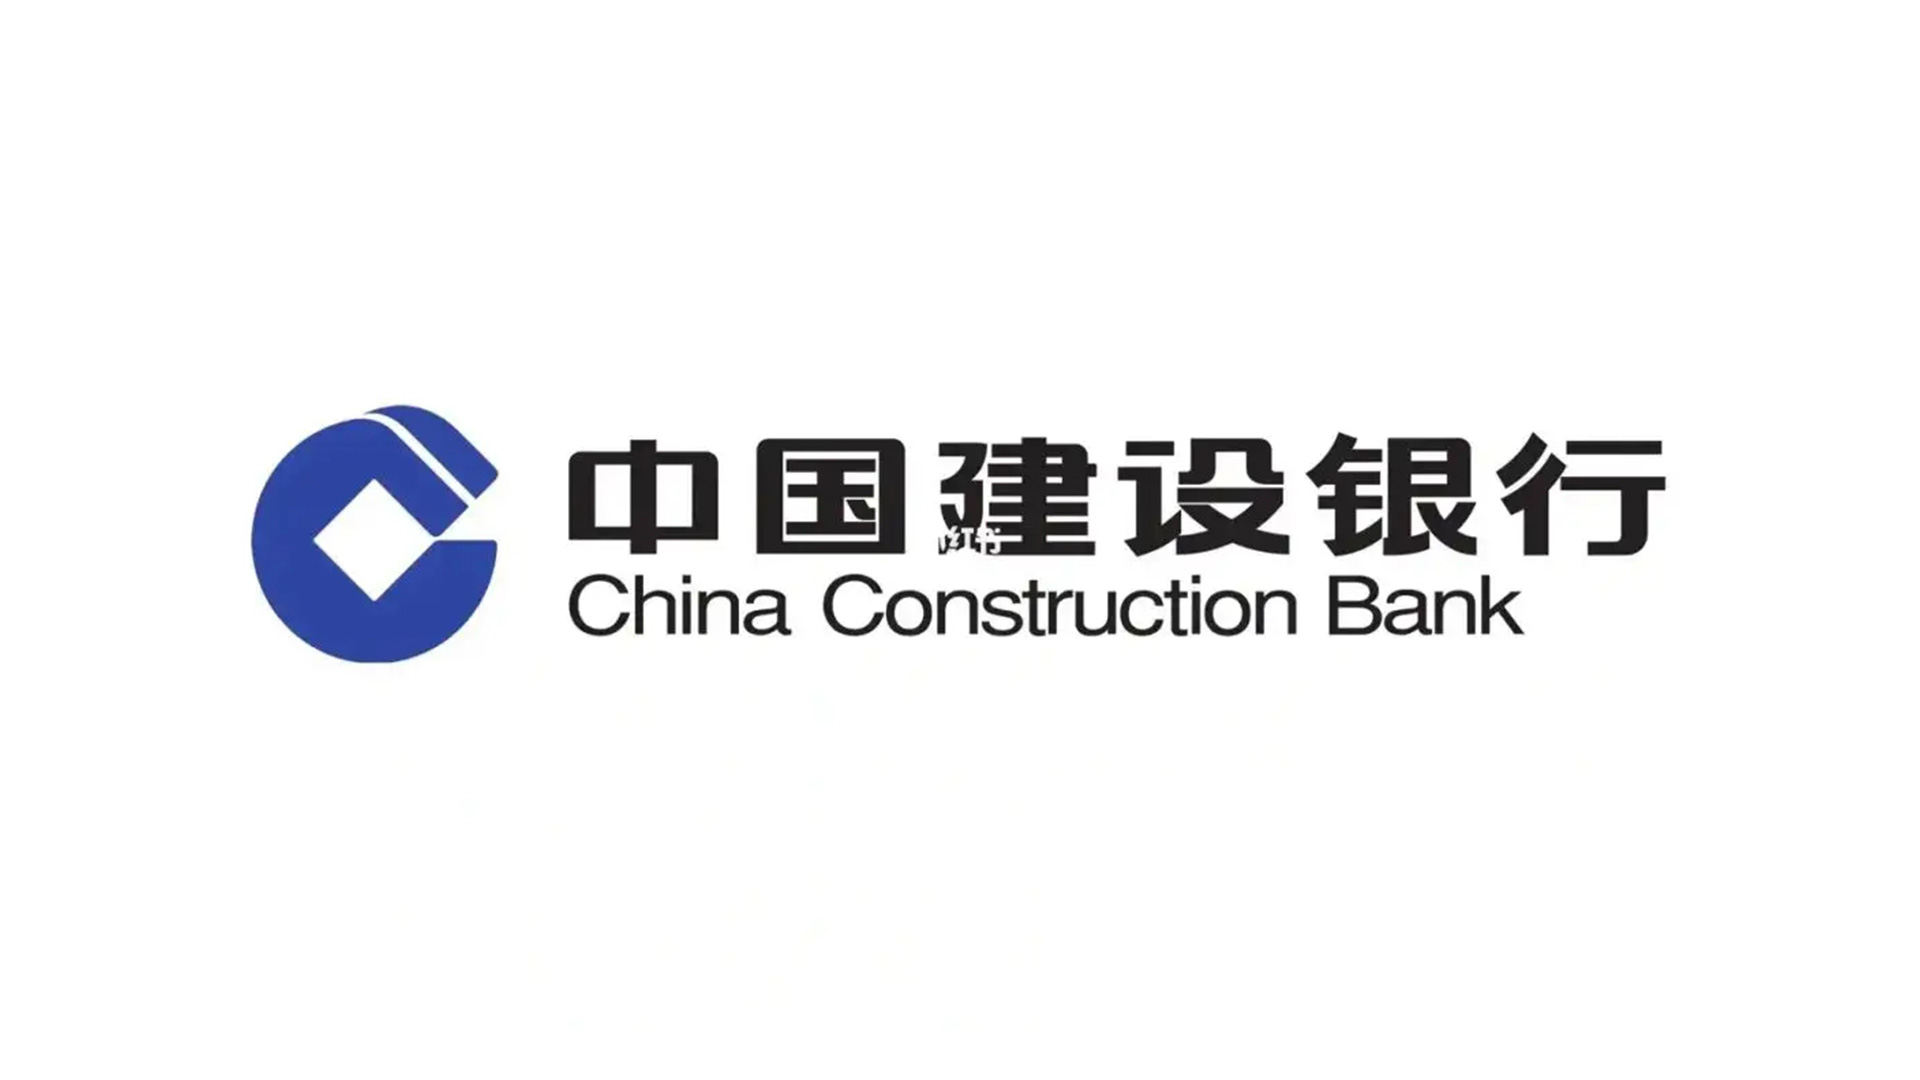 中国建设银行CCB标志设计正白稿.jpg